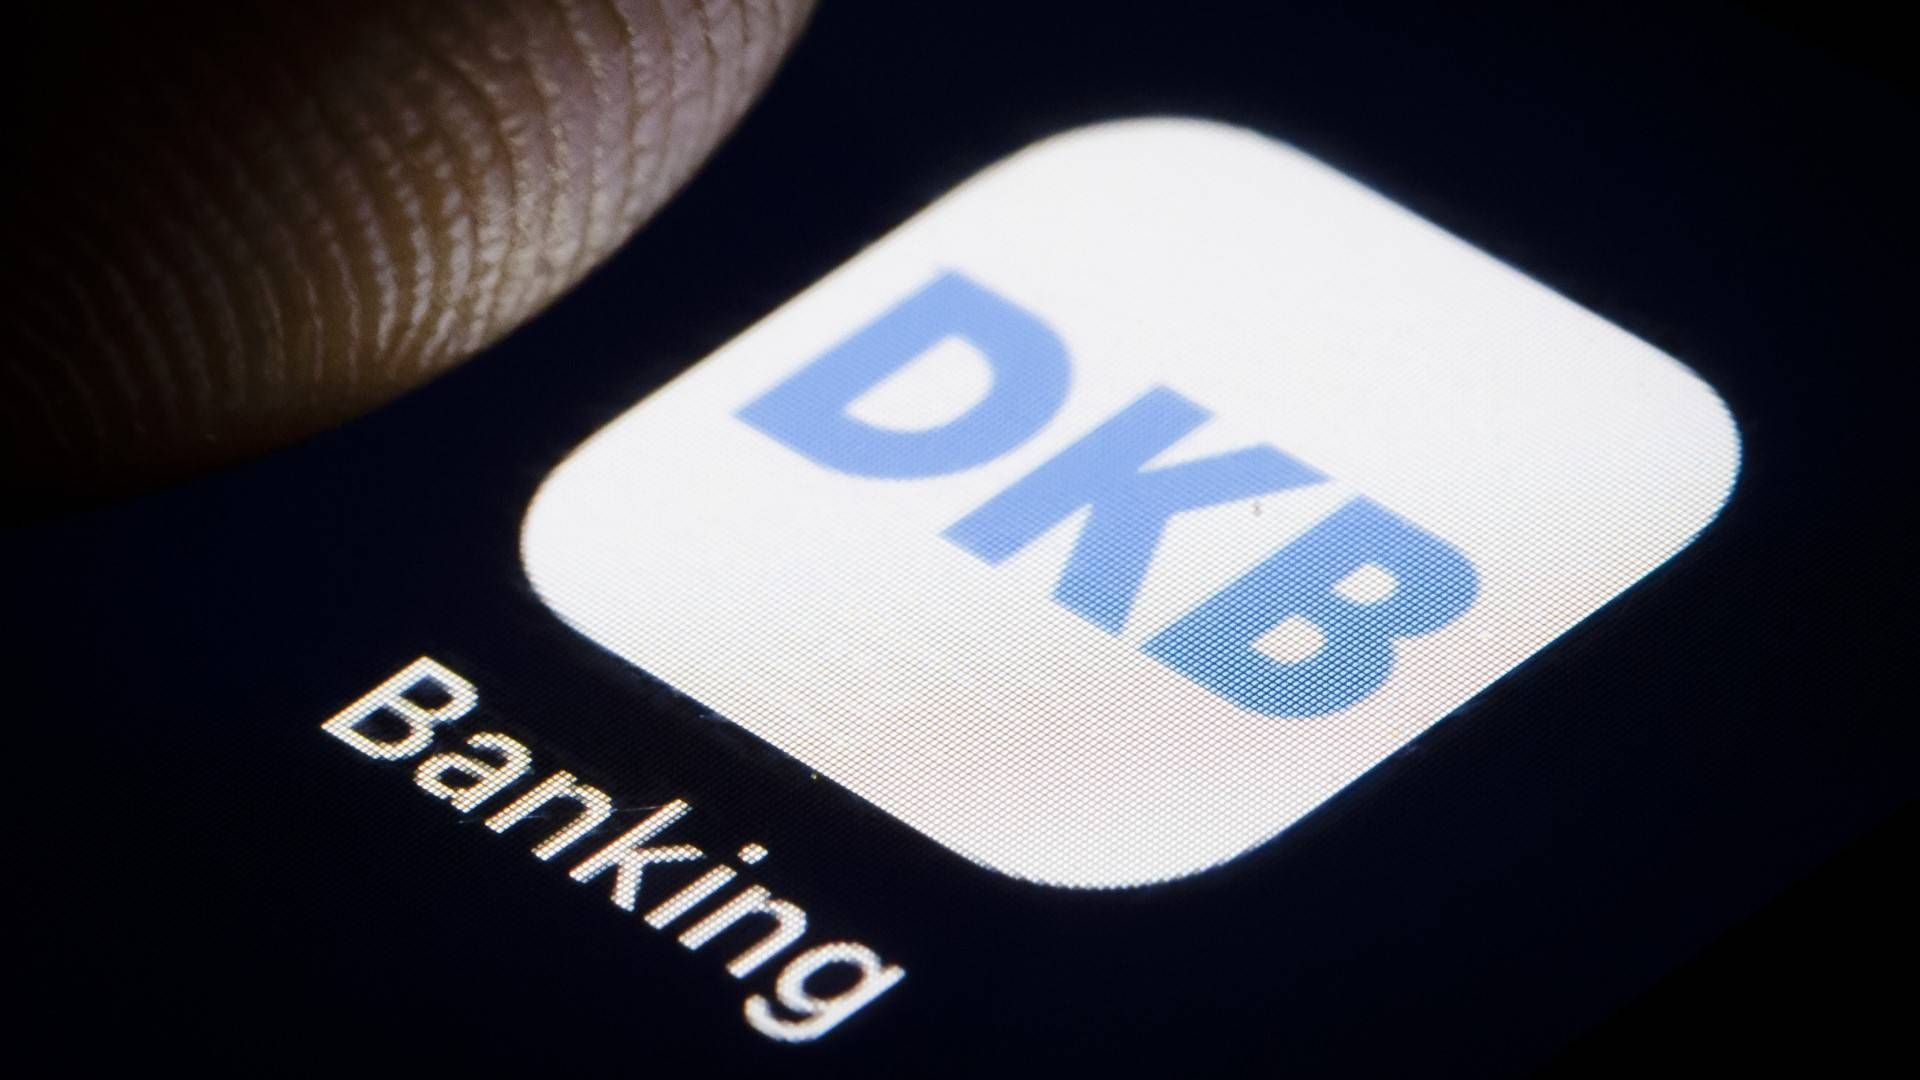 Logo der DKB auf einem Smartphone (Symbolbild) | Foto: picture alliance / photothek | Thomas Trutschel